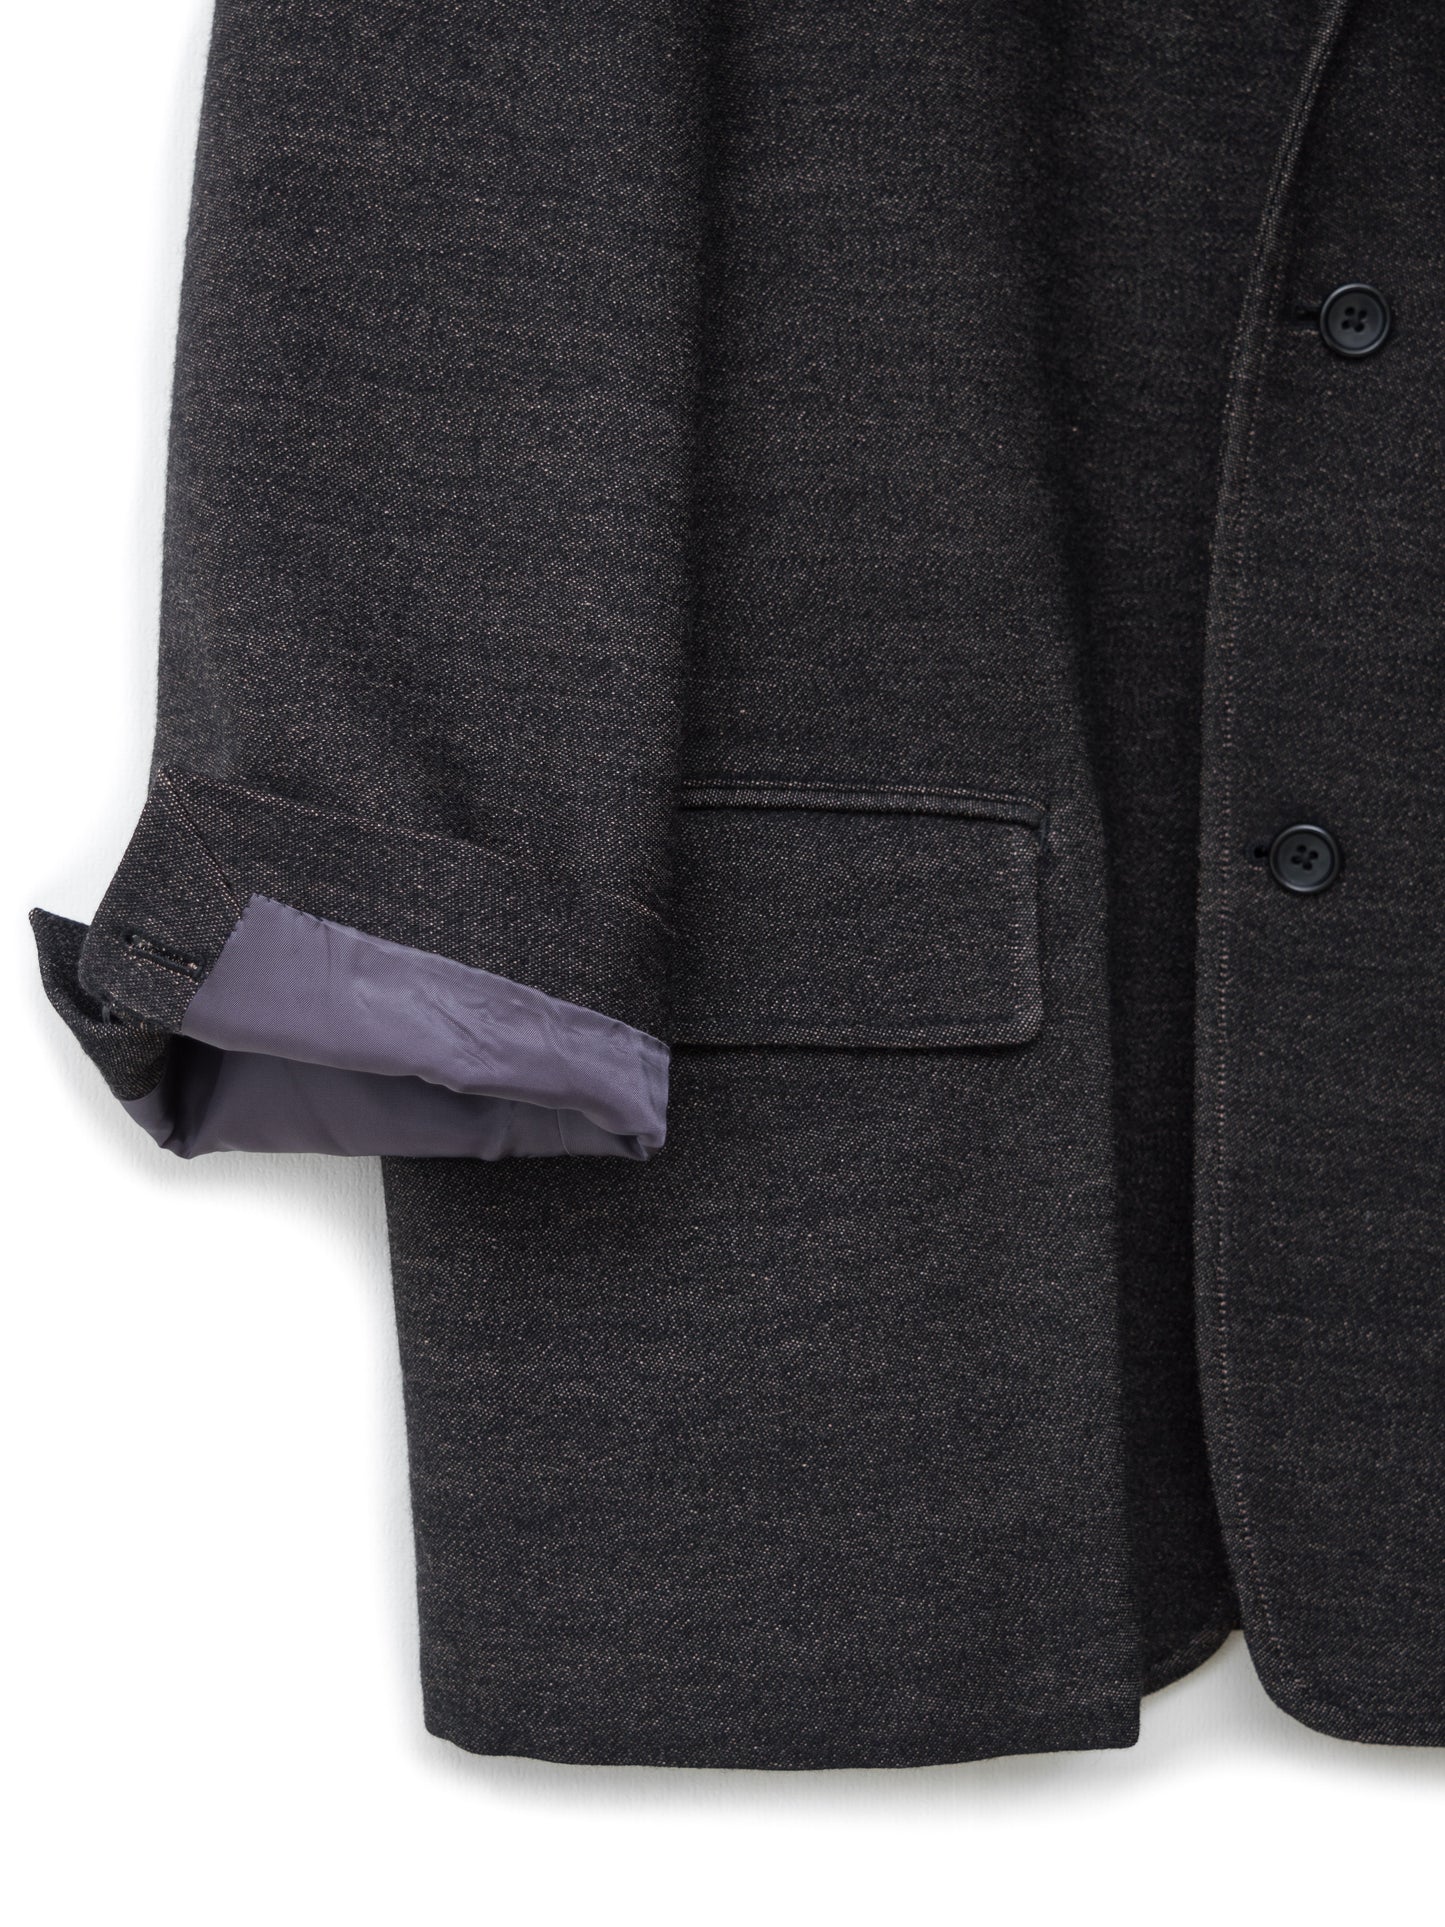 tailored jacket rose brown ∙ wool nylon ∙ medium